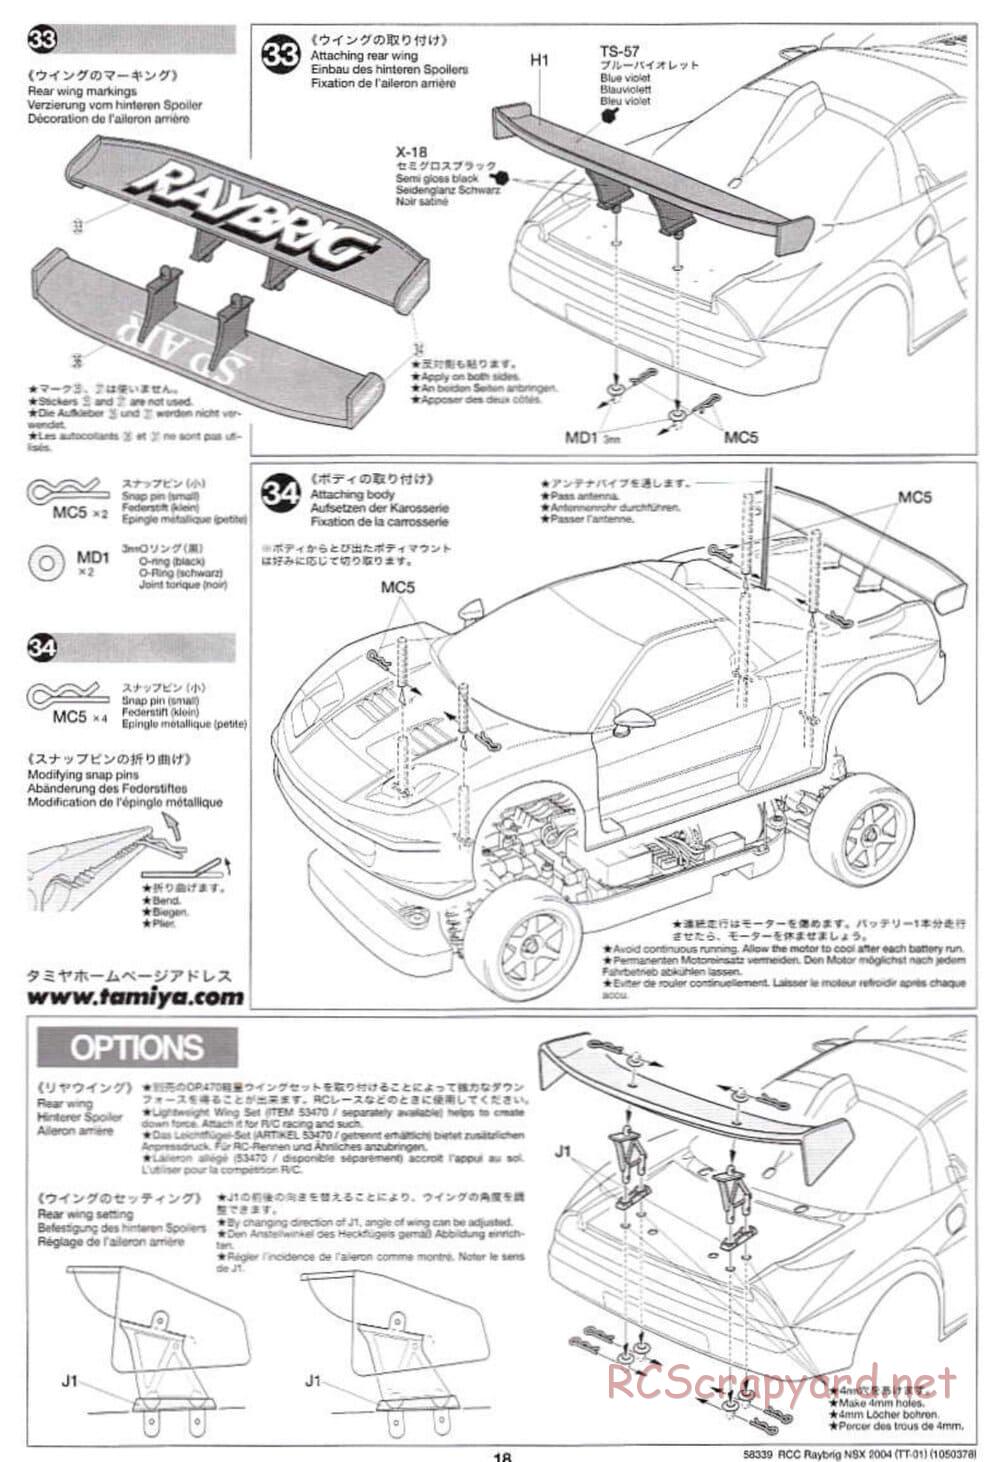 Tamiya - Raybrig NSX 2004 Chassis - Manual - Page 18